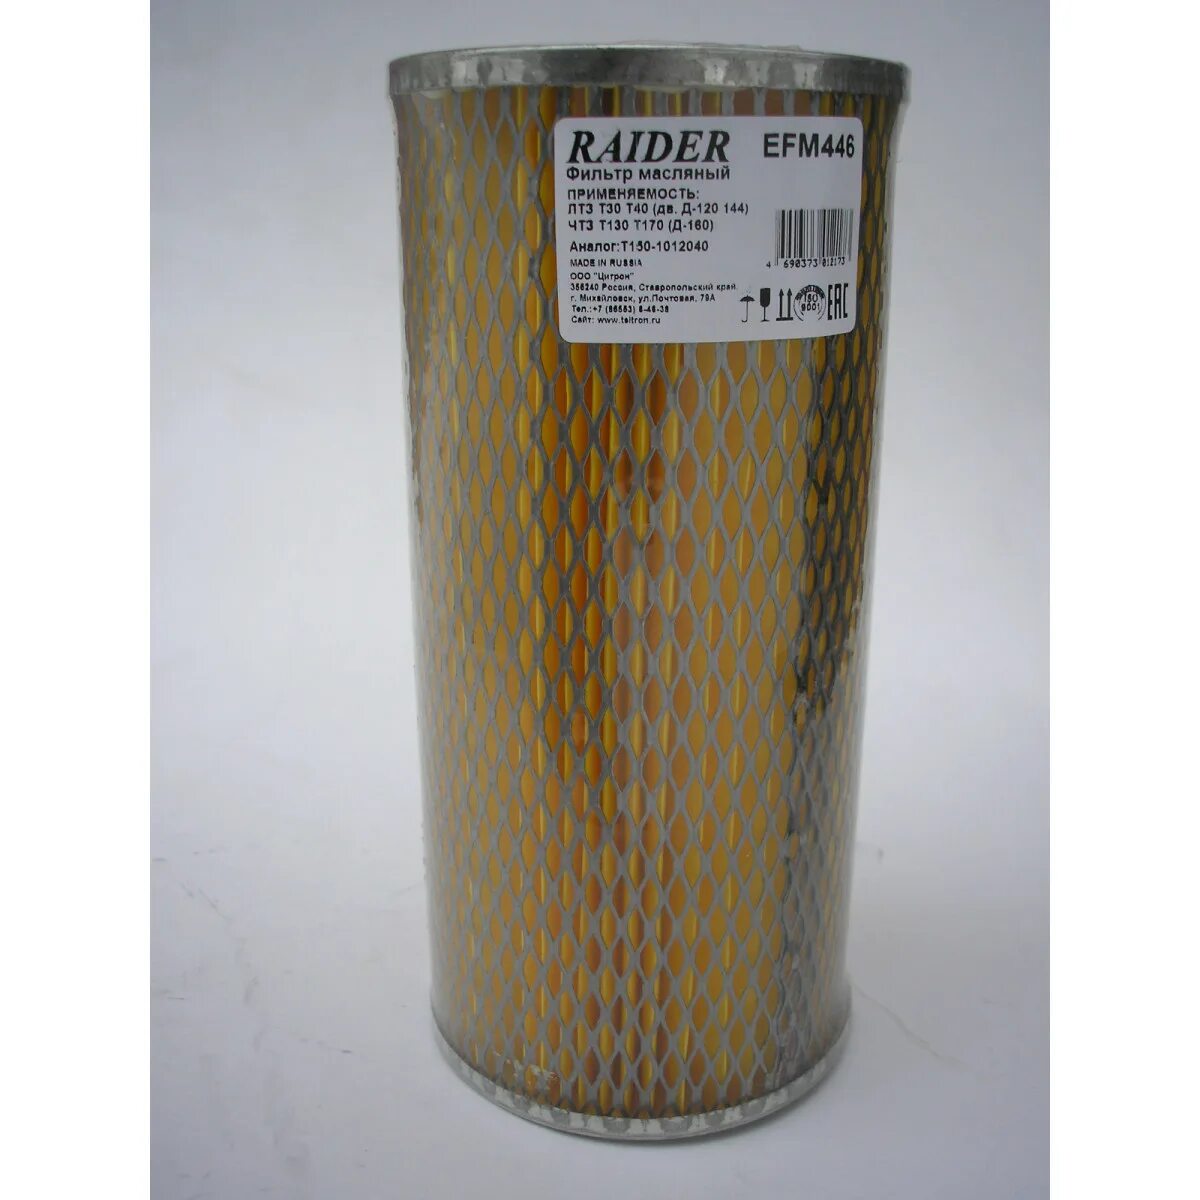 Масляный фильтр т32. Efm446 фильтр масляный. Фильтр масляный ЭФМ-446. Фильтр масляный 635-1-06 Цитрон. Р-635-1-06 фильтр масляный.